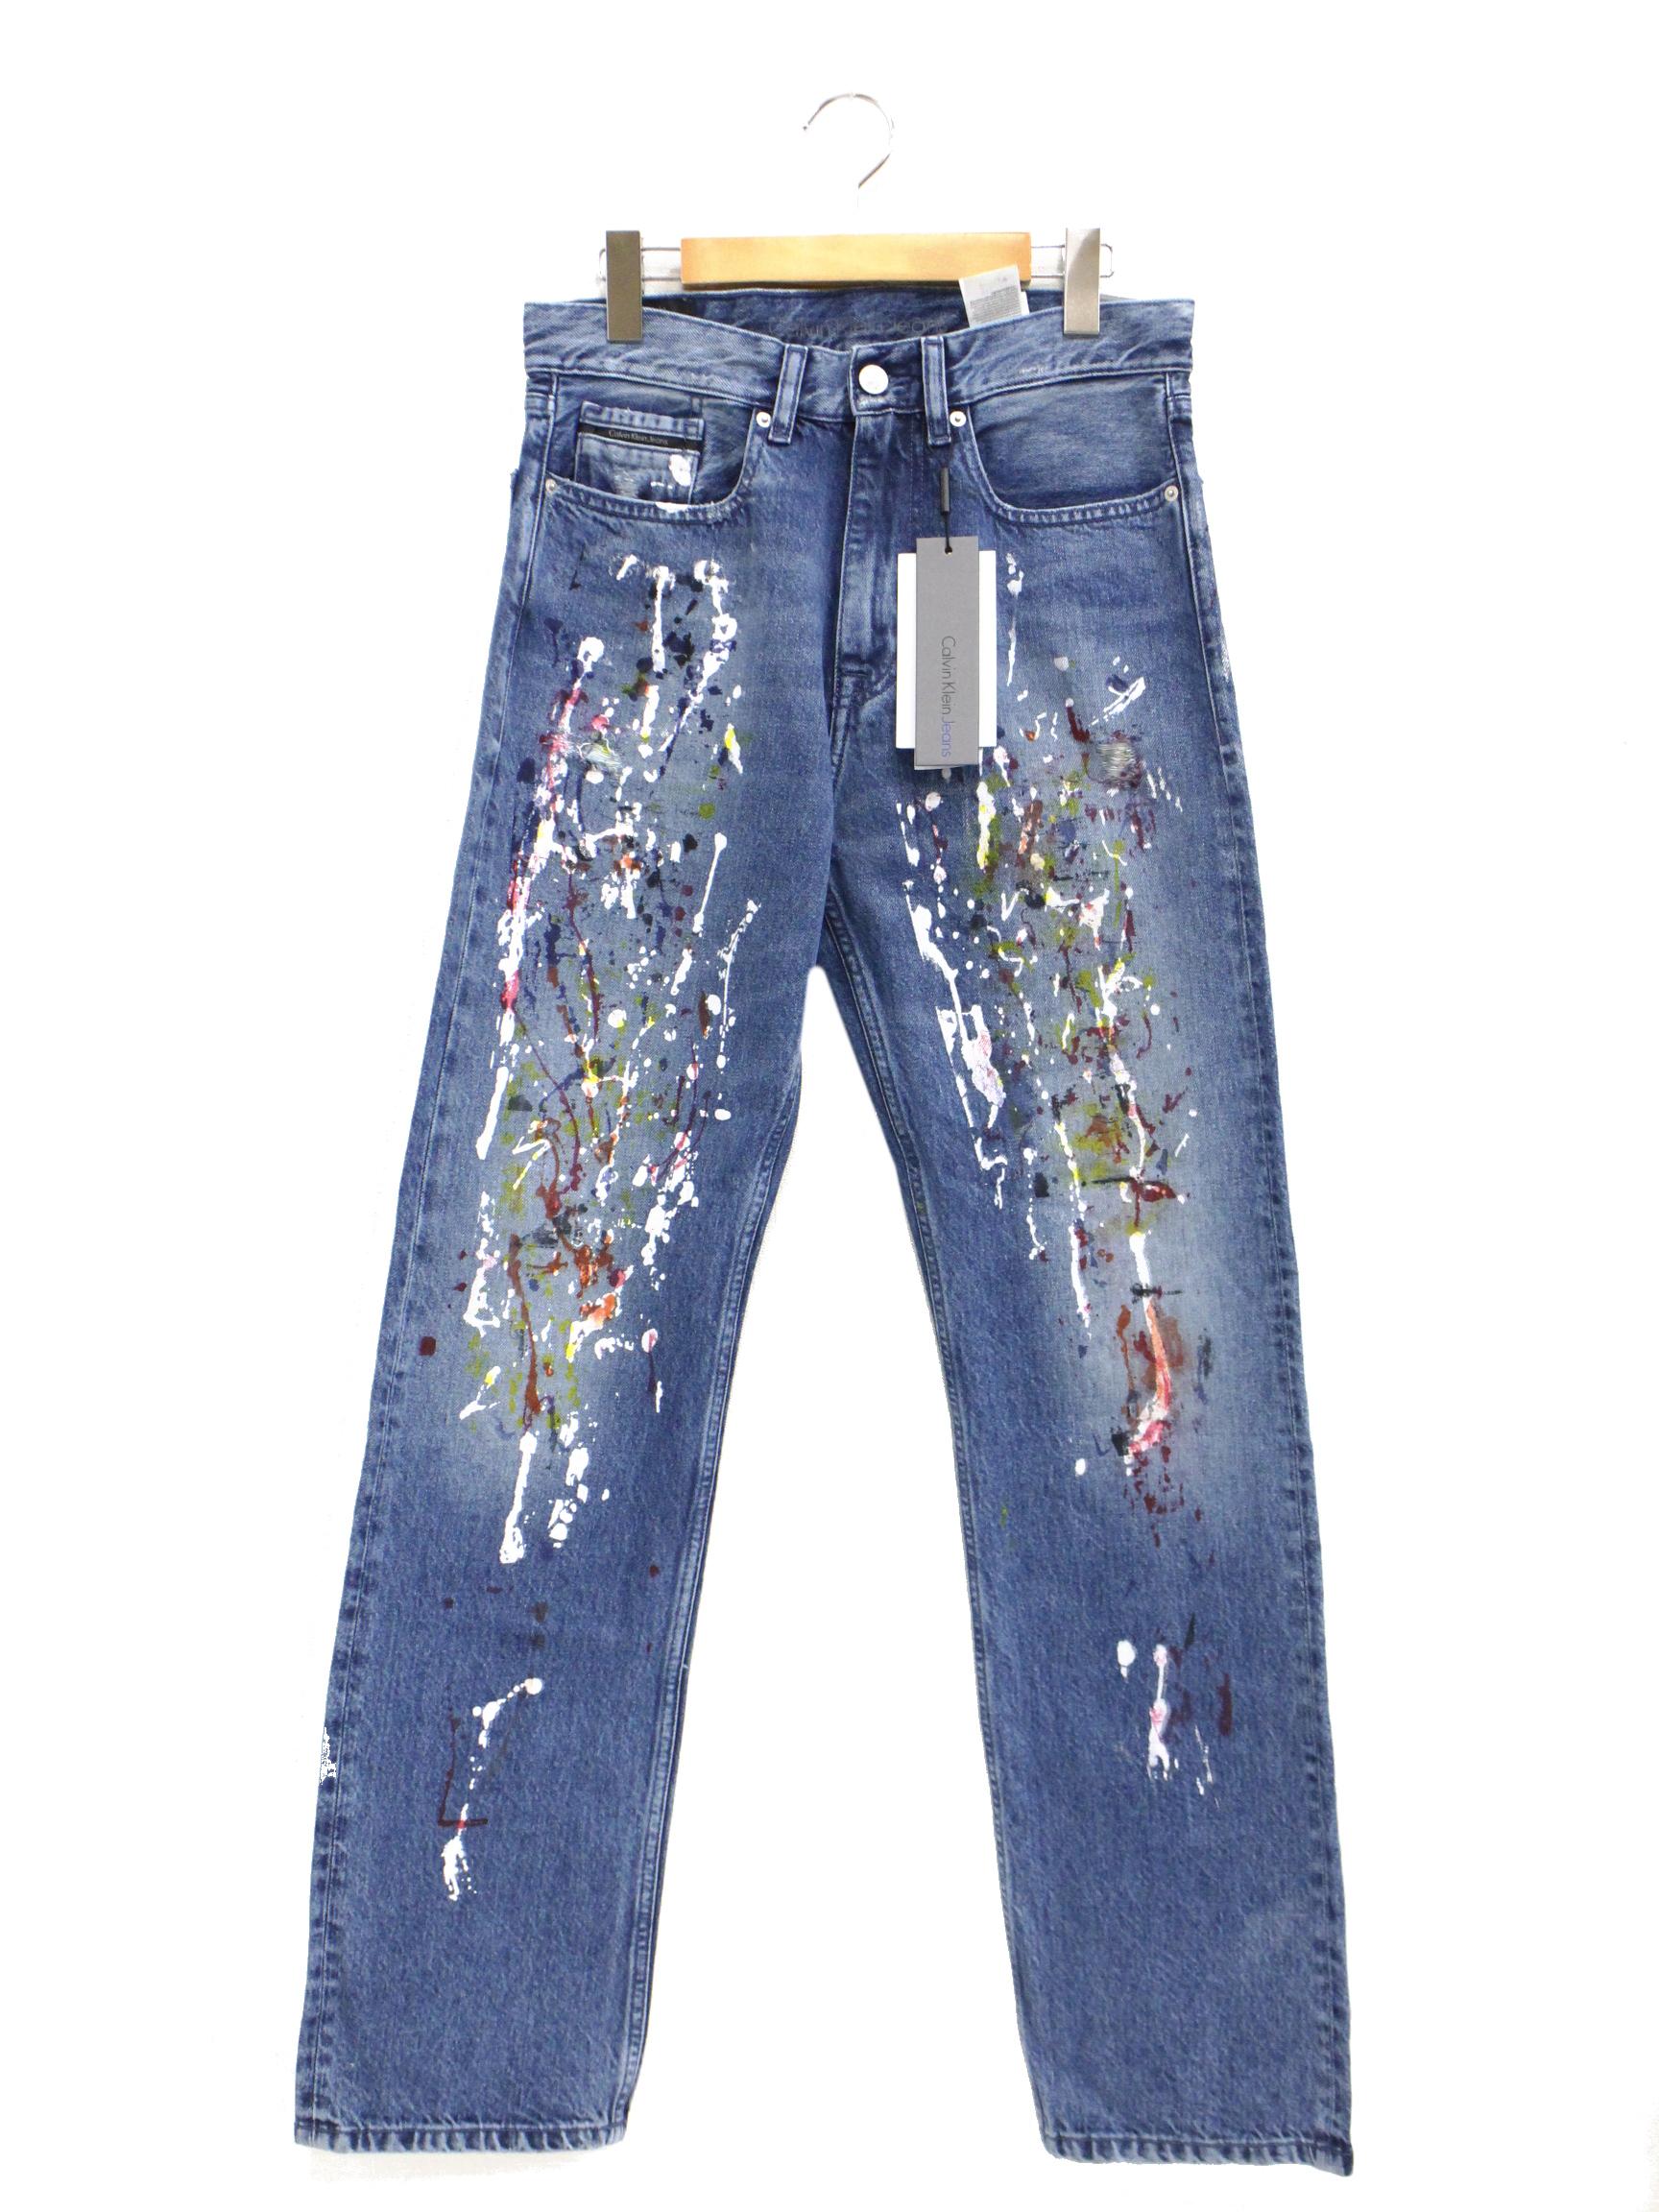 Calvin Klein Jeans (カルバンクラインジーンズ) ペイントデニムパンツ サイズ:W29 未使用品